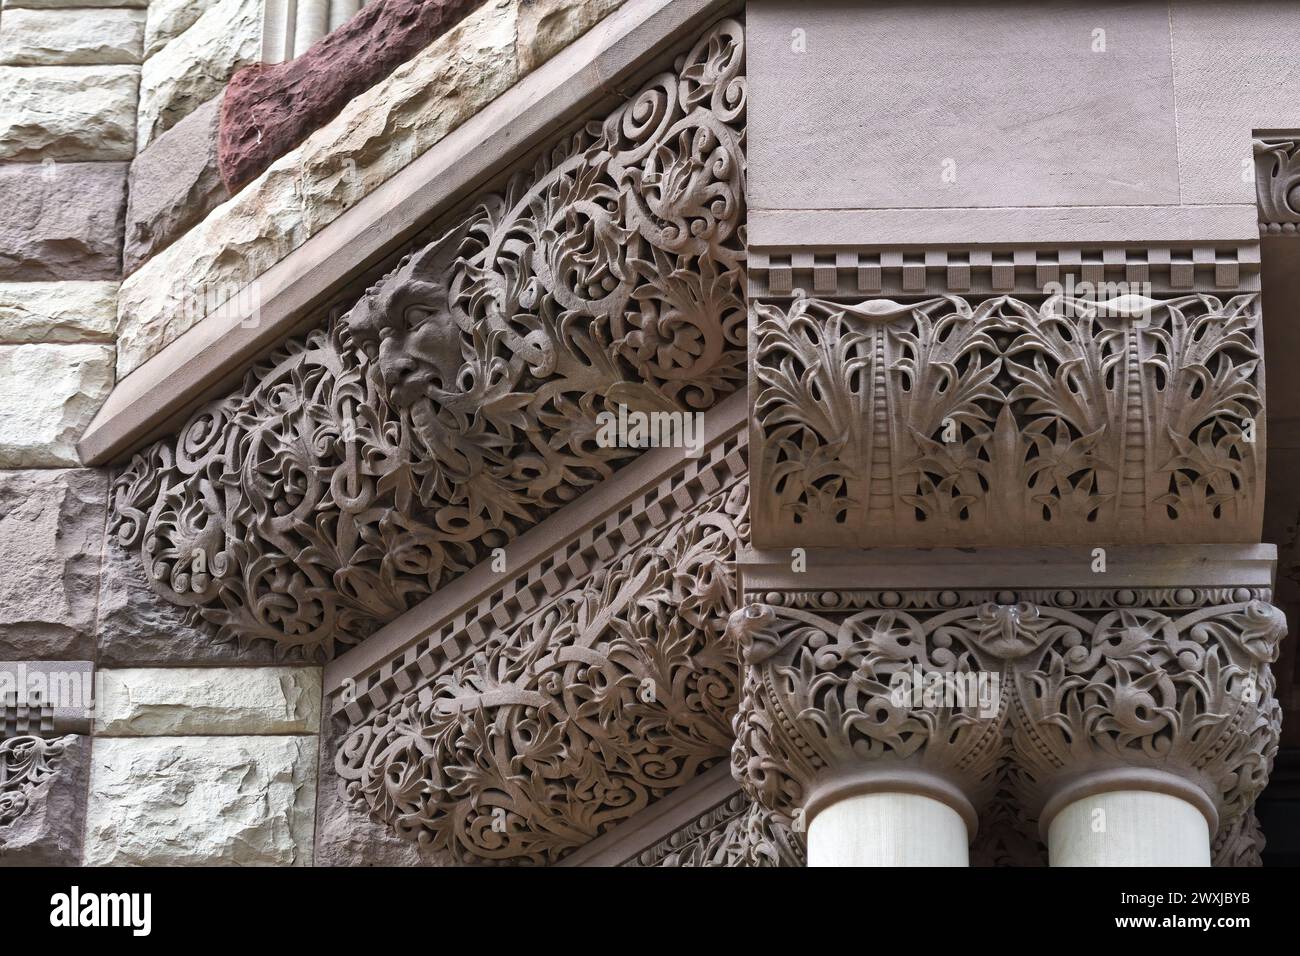 Elementi architettonici coloniali o dettagli nell'Old City Hall Building (1898), Toronto, Canada. Parte di una serie. Foto Stock